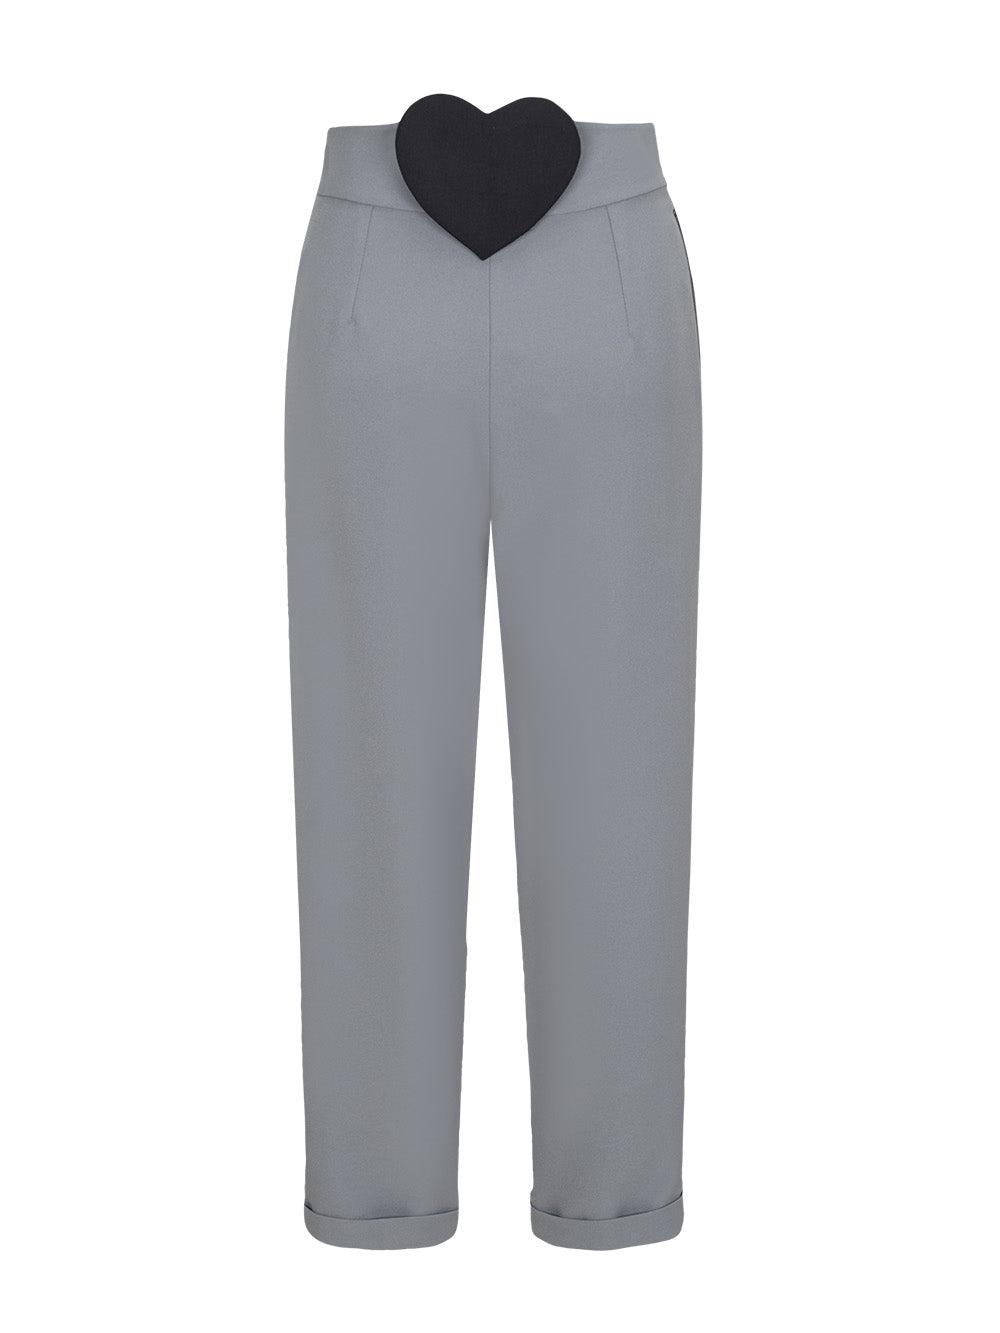 MUKZIN Grey Commuter Suit Pants